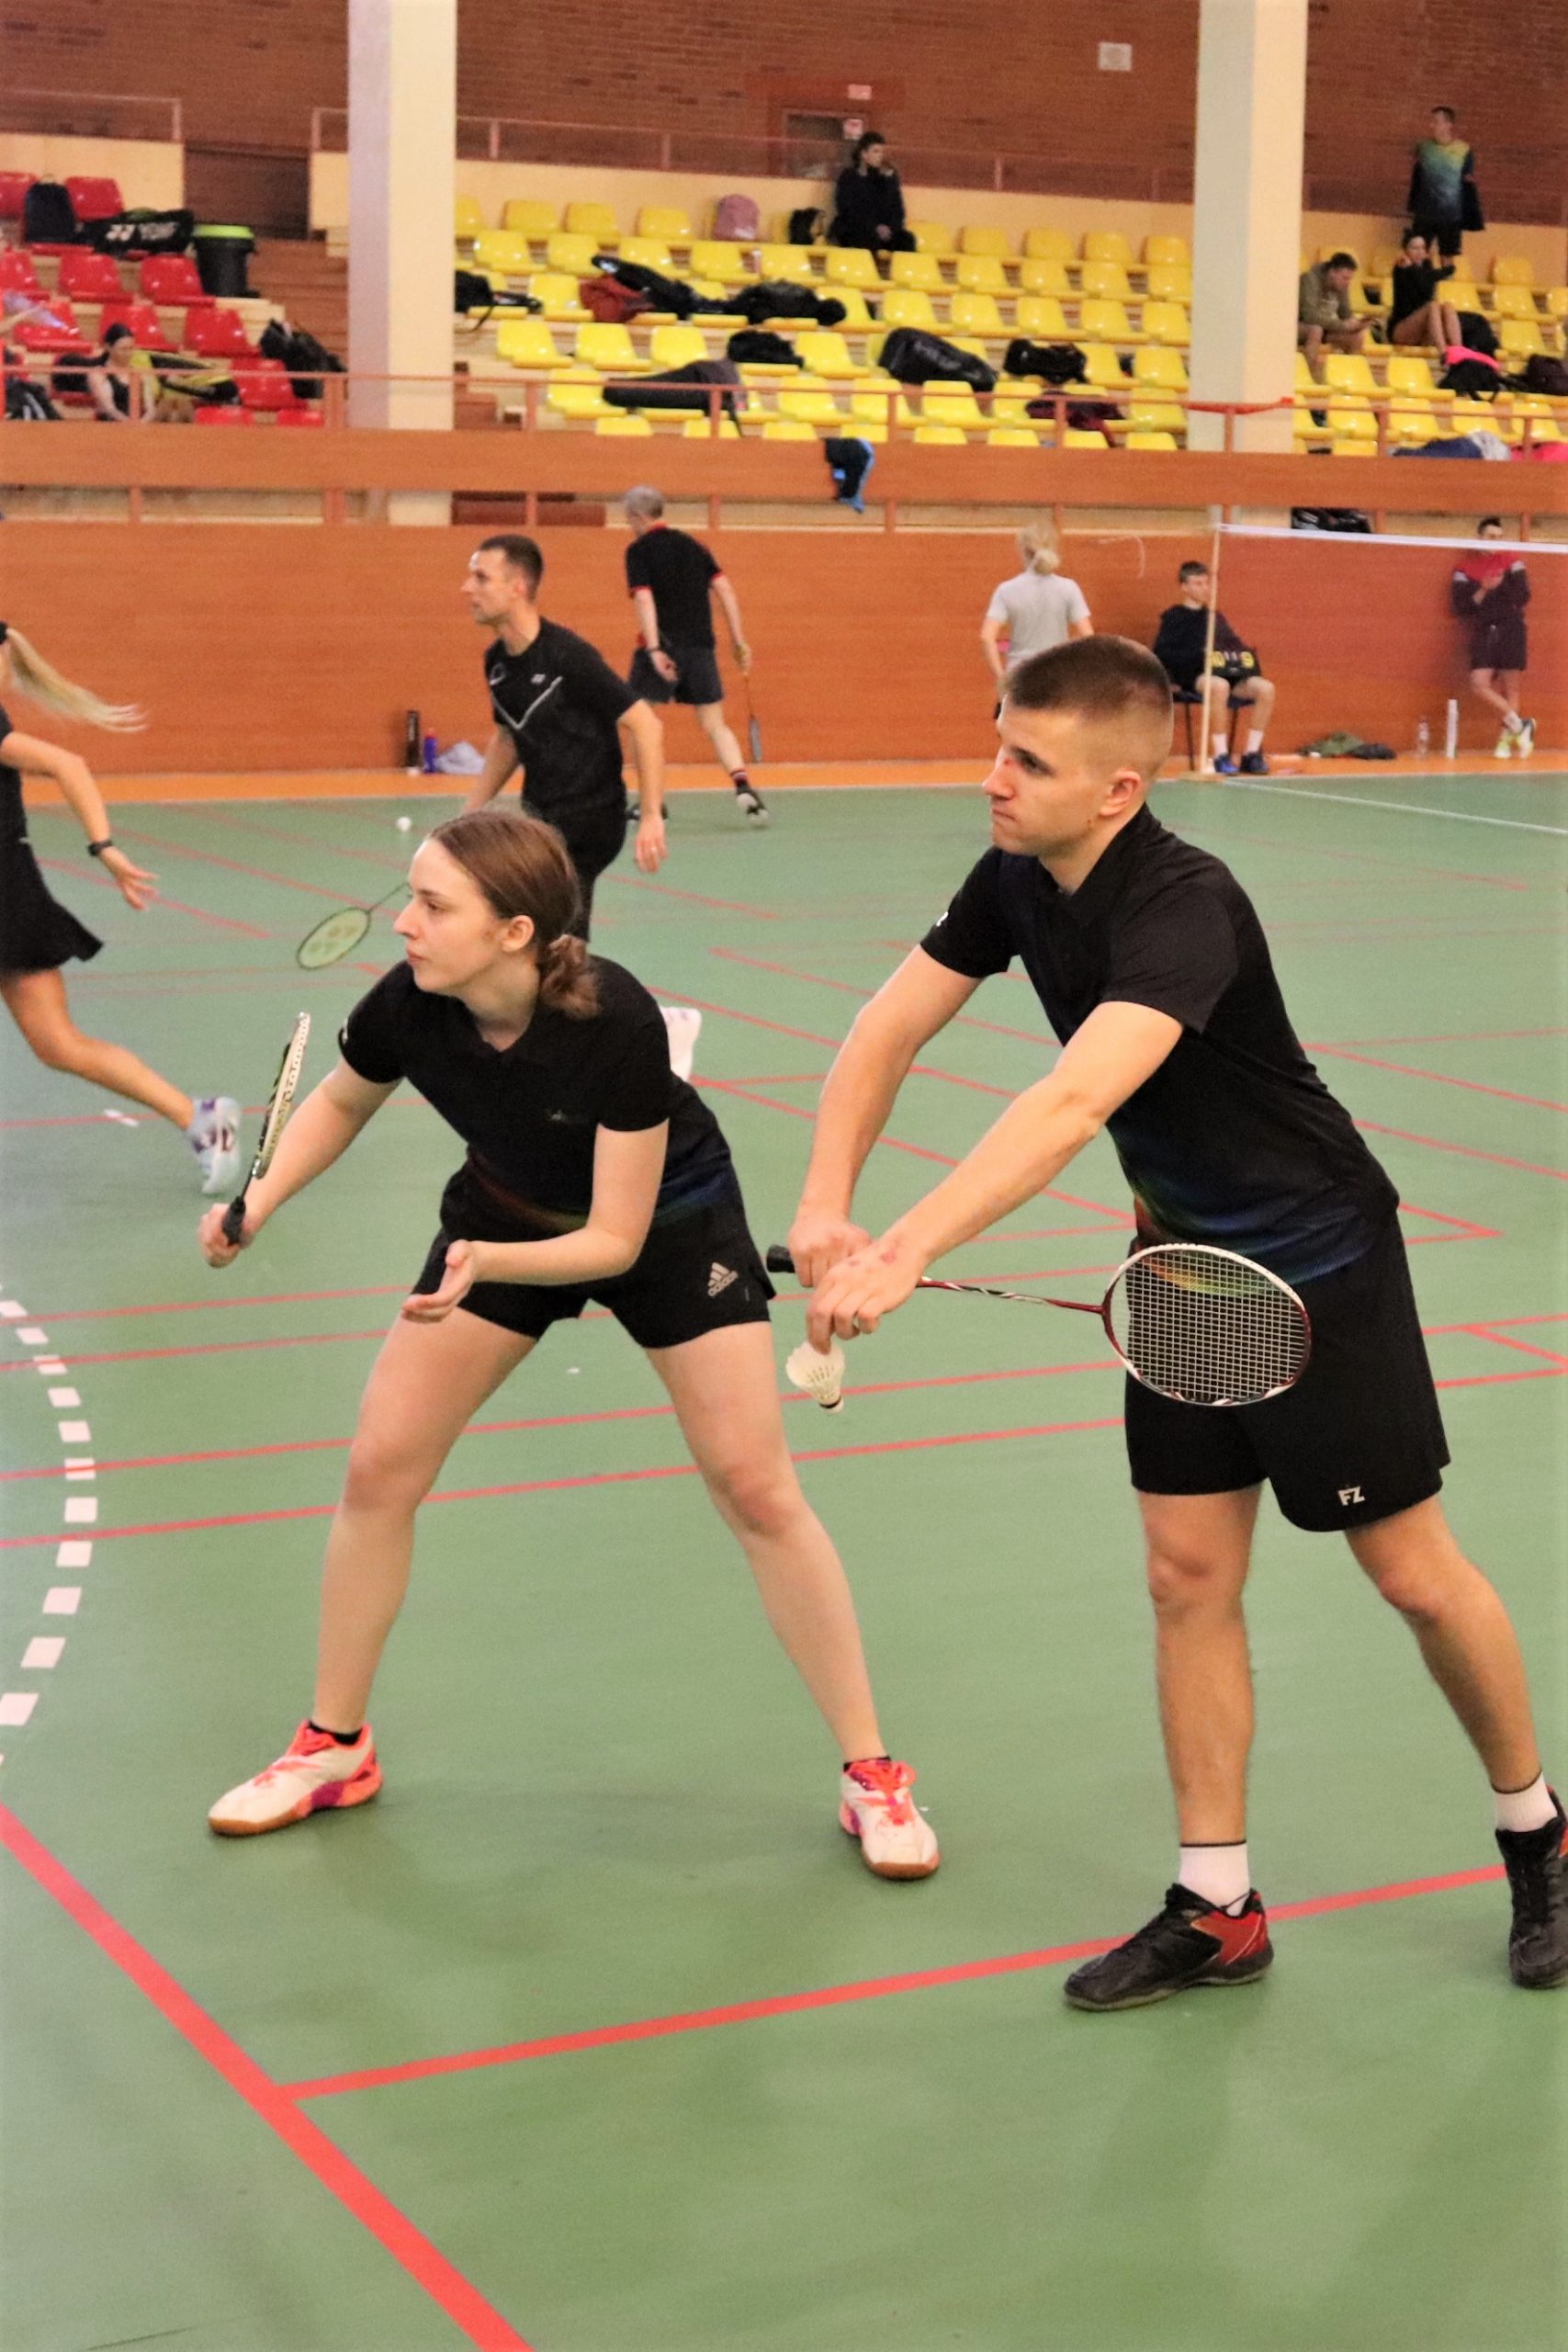 Du studentai - vaikinas ir mergina juoda sportine apranga, žaidžia badmintoną badmintono aikštelėje.